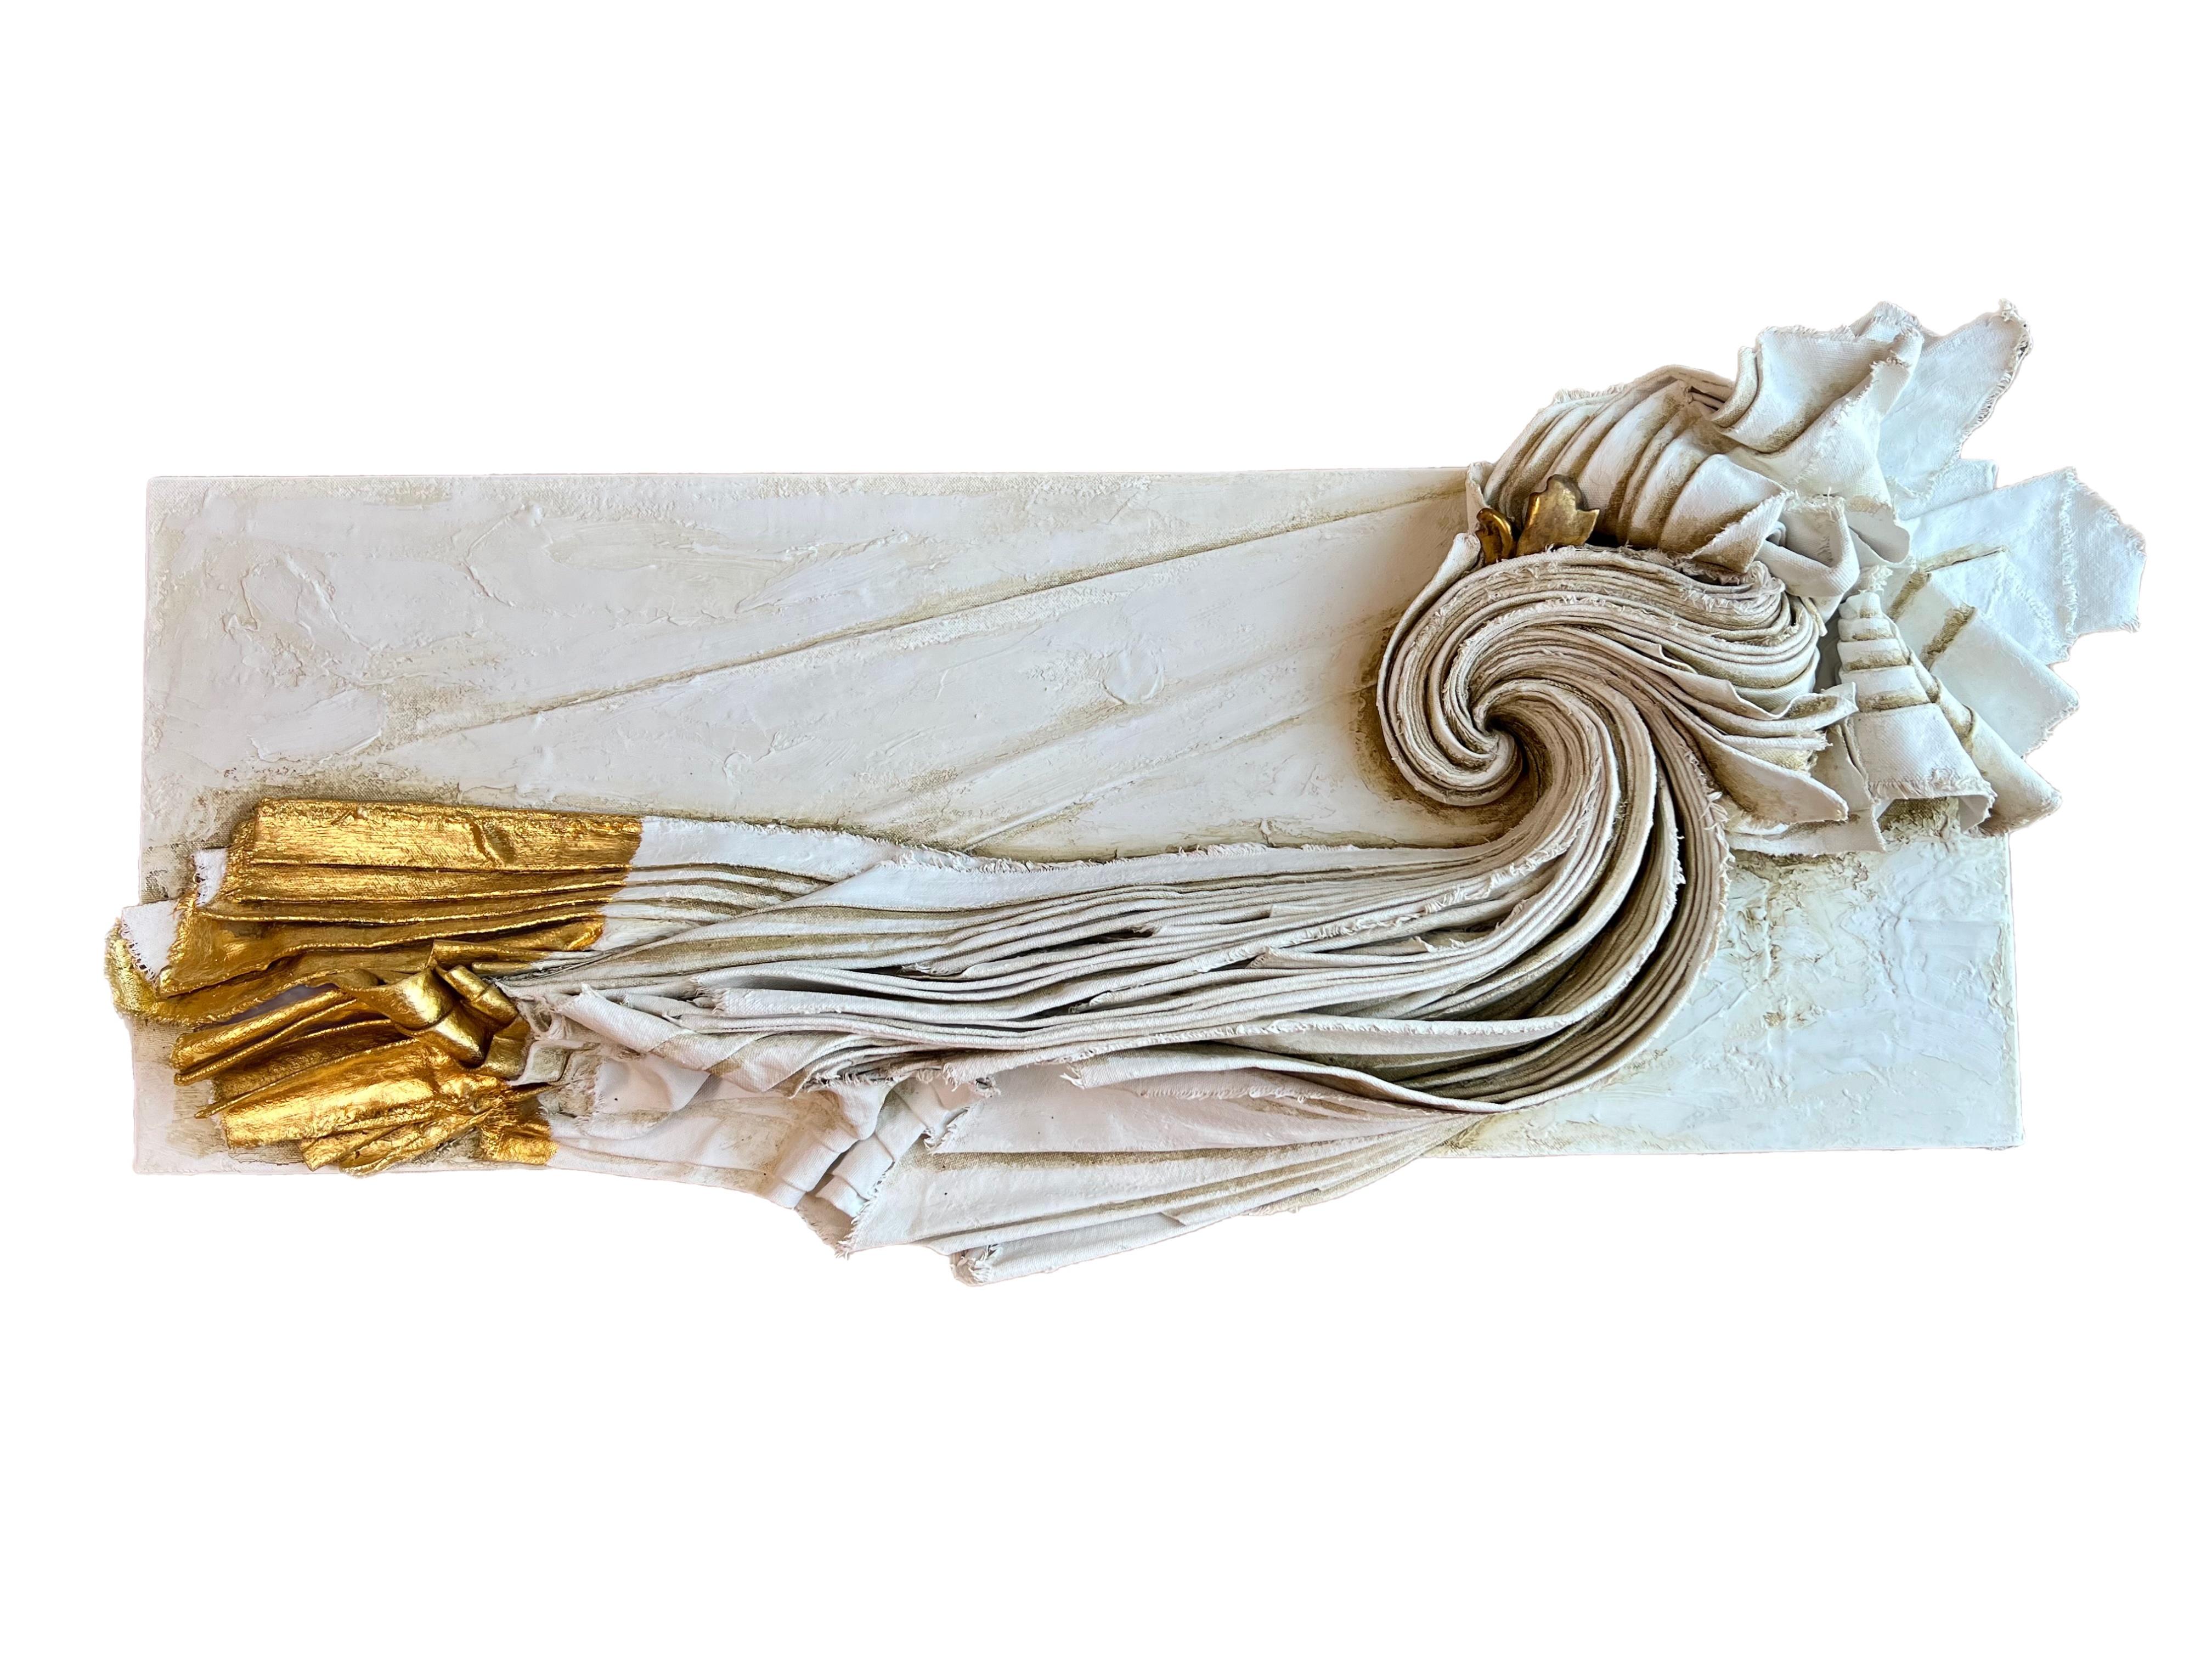 Skulpturale Leinwand mit einem italienischen Vergoldungsfragment aus dem 17. Jahrhundert und 24-karätigem Blattgold.

Die skulpturale Leinwand ist mit Gesso, Vergoldungswachs, Marmorpaste, grüner Erde, italienischem Ocker und Asche auf Karton